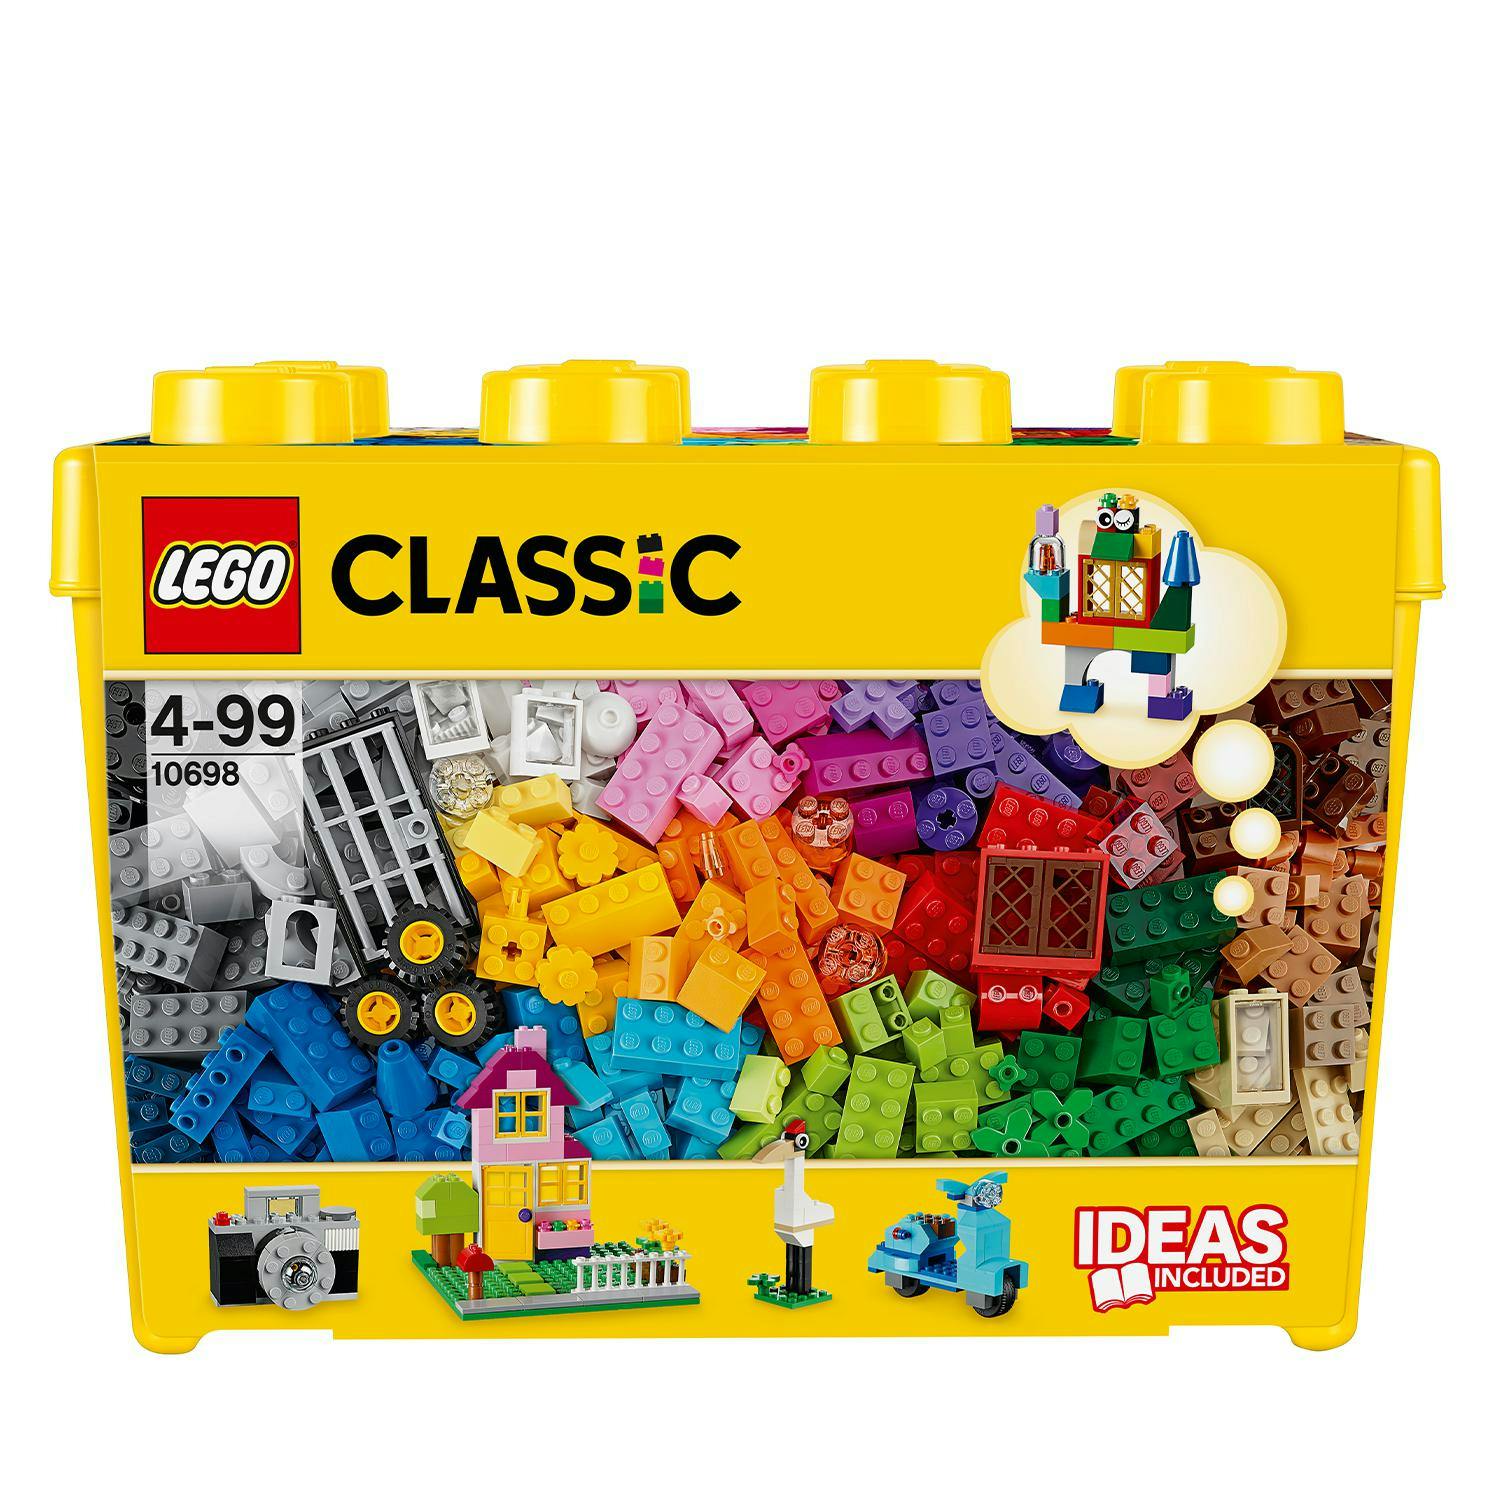 Onrechtvaardig Sinis Lagere school LEGO Classic Creatieve Grote Opbergdoos (10698)